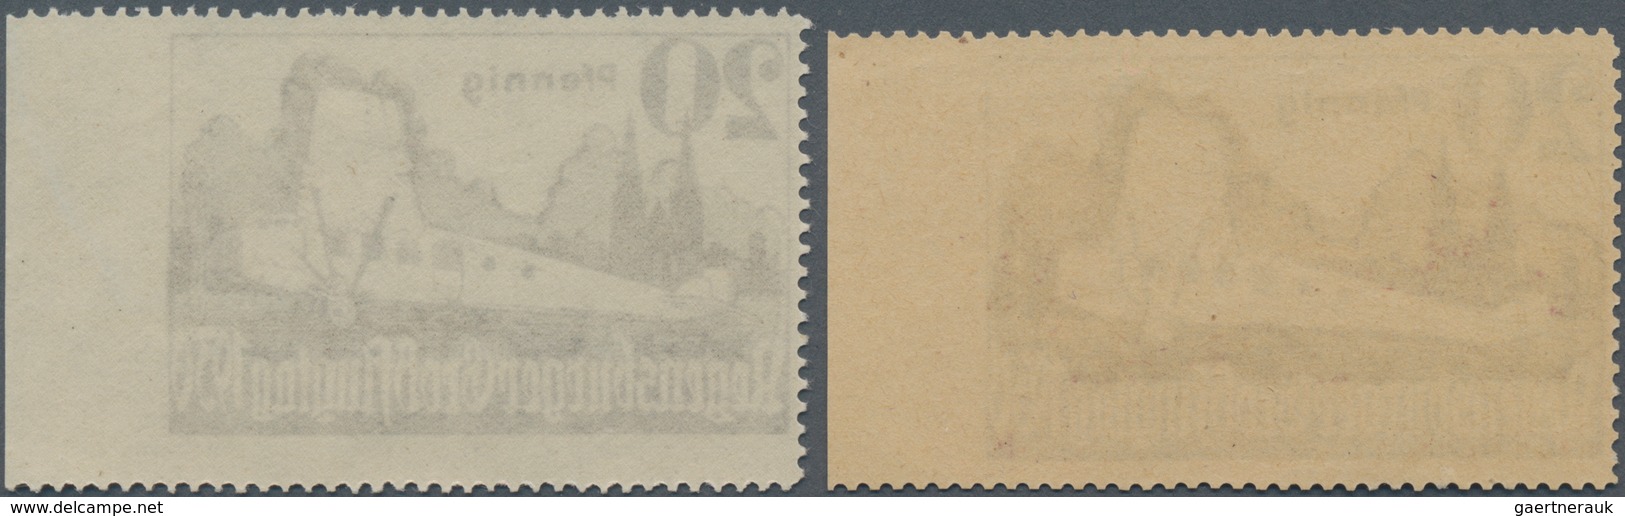 Deutsches Reich - Halbamtliche Flugmarken: 1930, Regensburger Flugtag 20 Pfg. Beide Farben, Jeweils - Luchtpost & Zeppelin